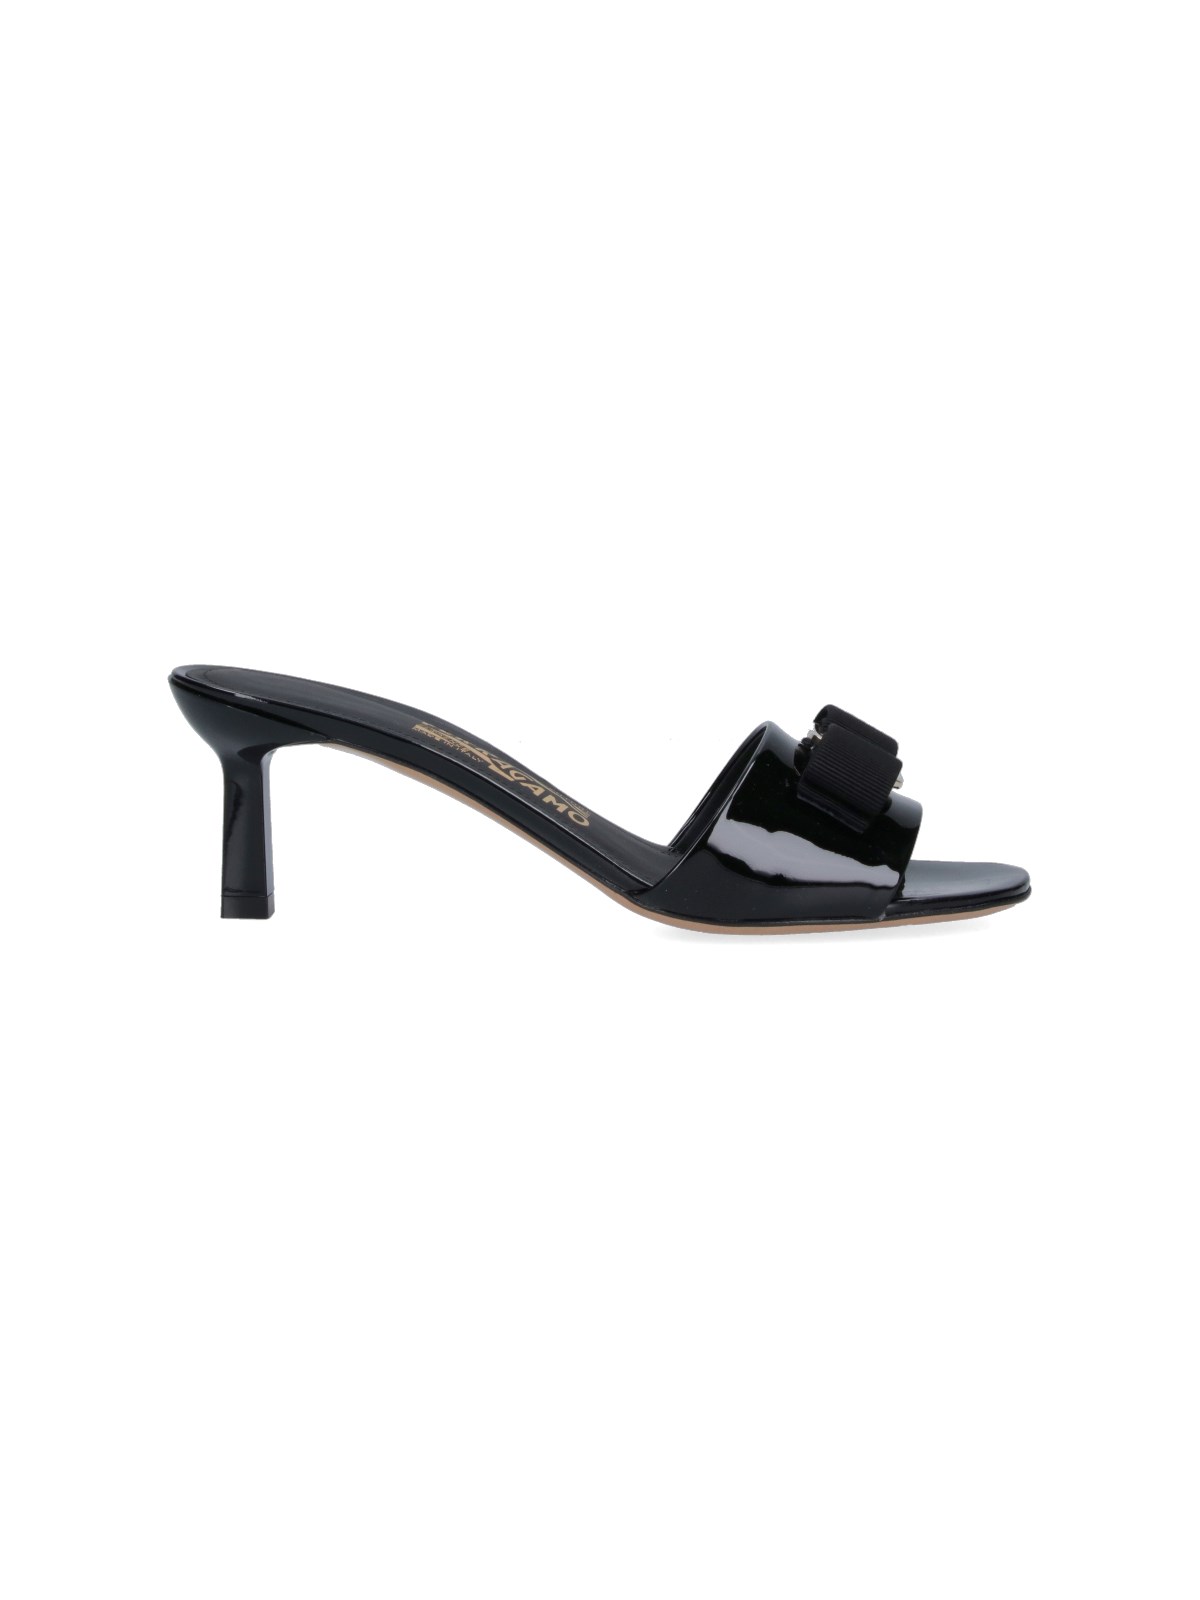 Ferragamo 'vara' Bow Sandals In Black  